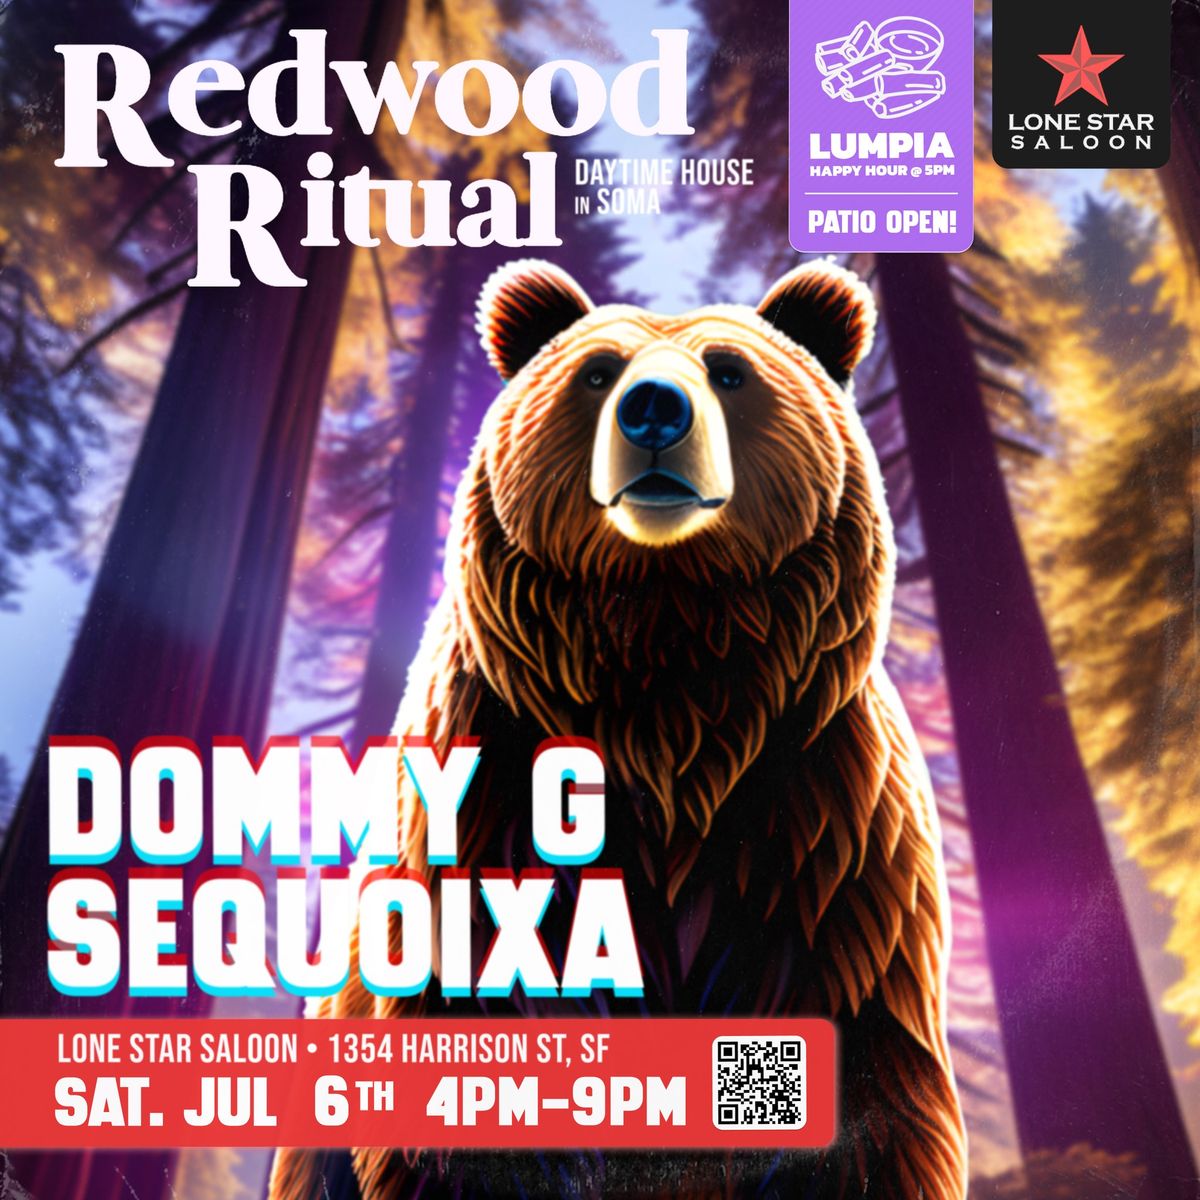 Redwood Ritual